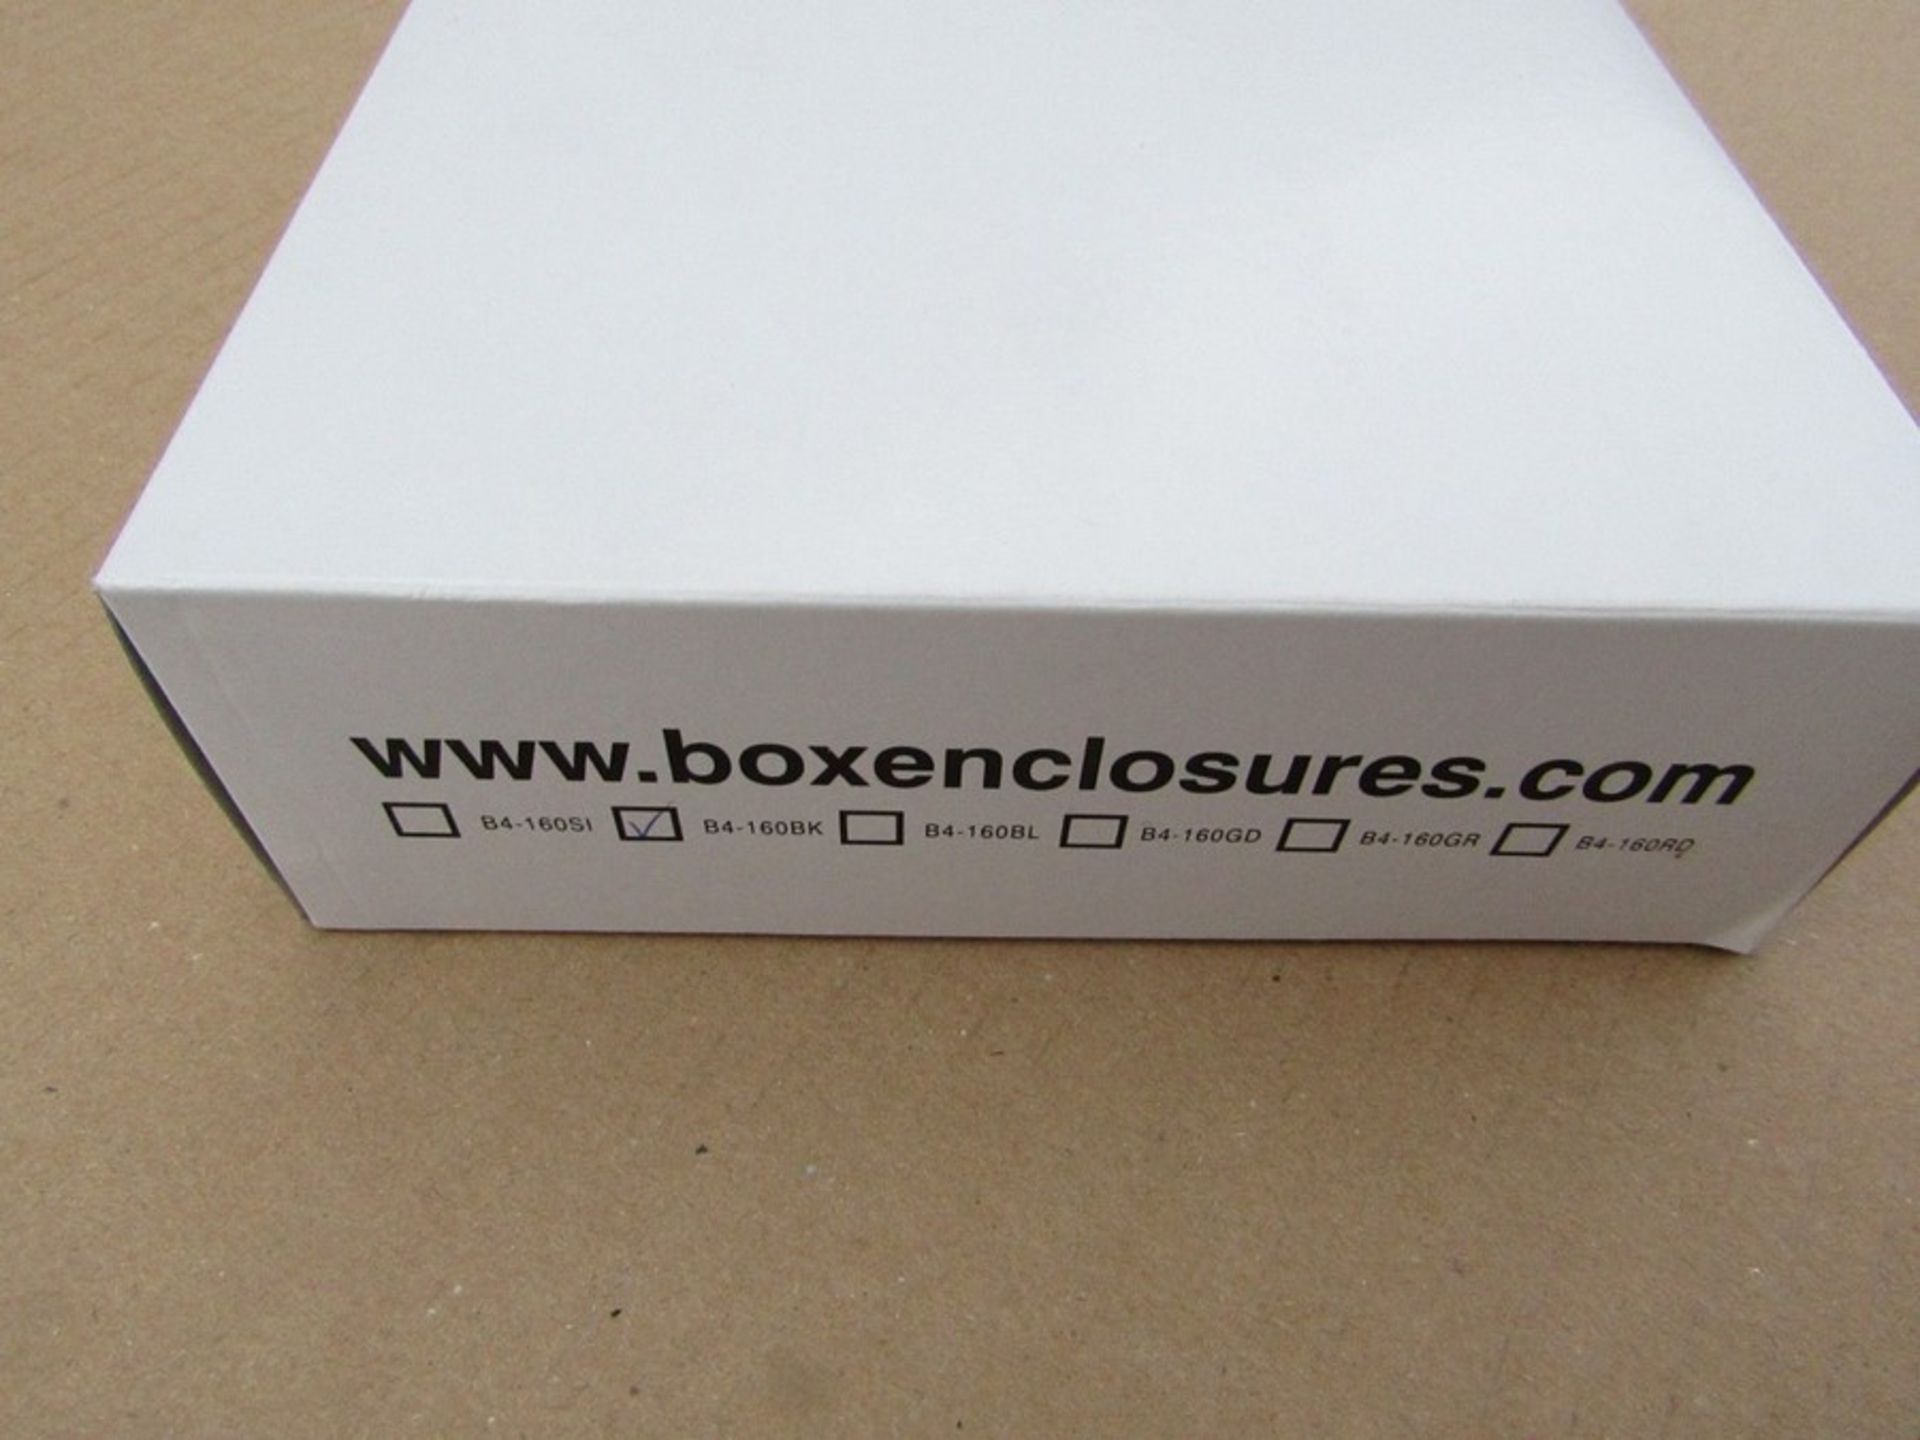 20 x BOX Bex 4 Black Aluminium Enclosure Instrument Case 160.5x169.8x53.5mm £300 retail H7L 1046135 - Image 2 of 2